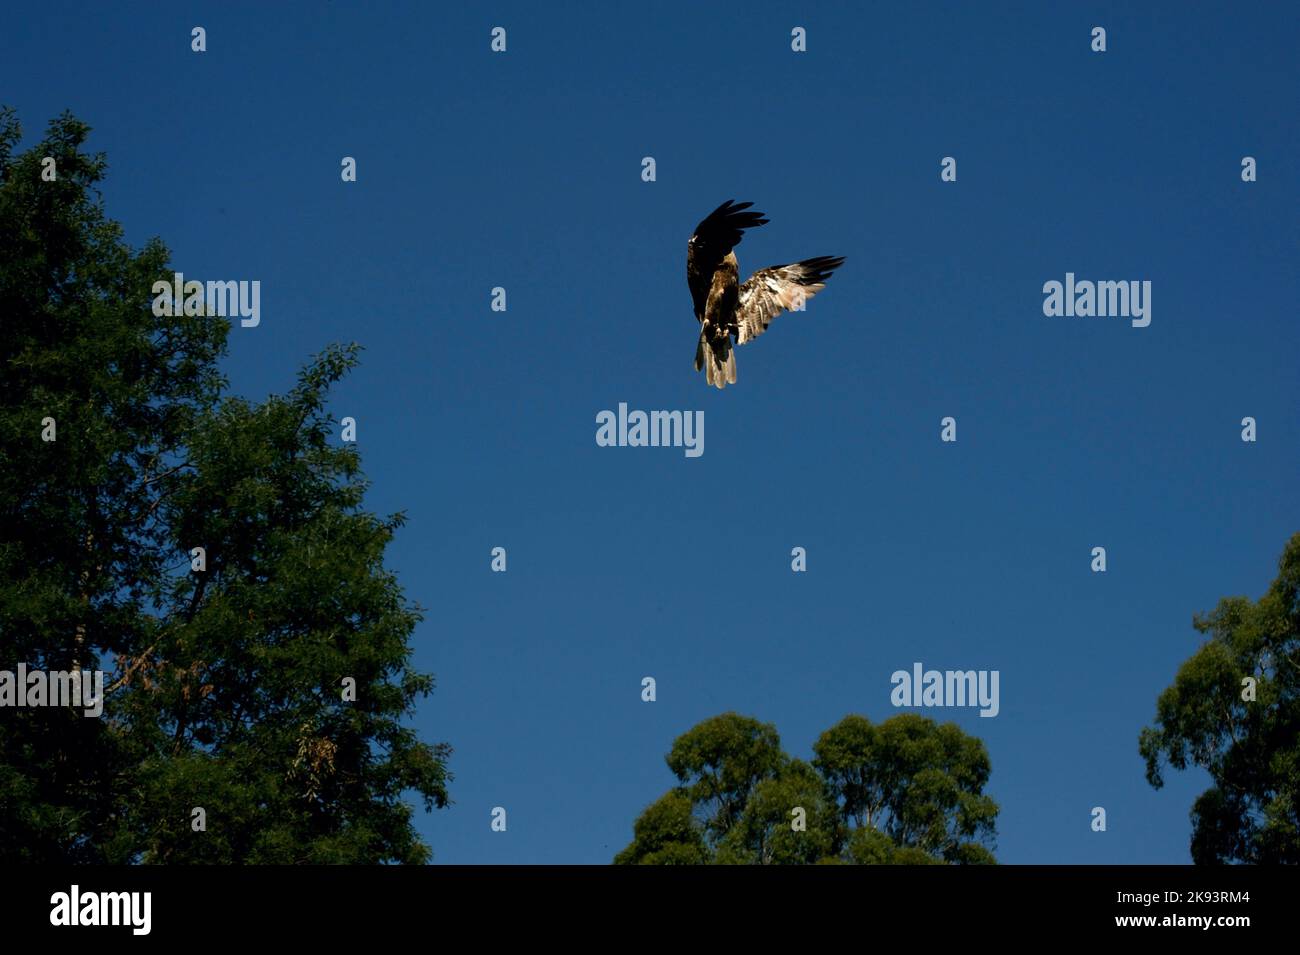 Le sifflet Kite (Milvus Sphenurus) survole la Flight Arena du sanctuaire de Healesville, à Victoria, en Australie, en attendant que le gardien jette de la nourriture. Banque D'Images